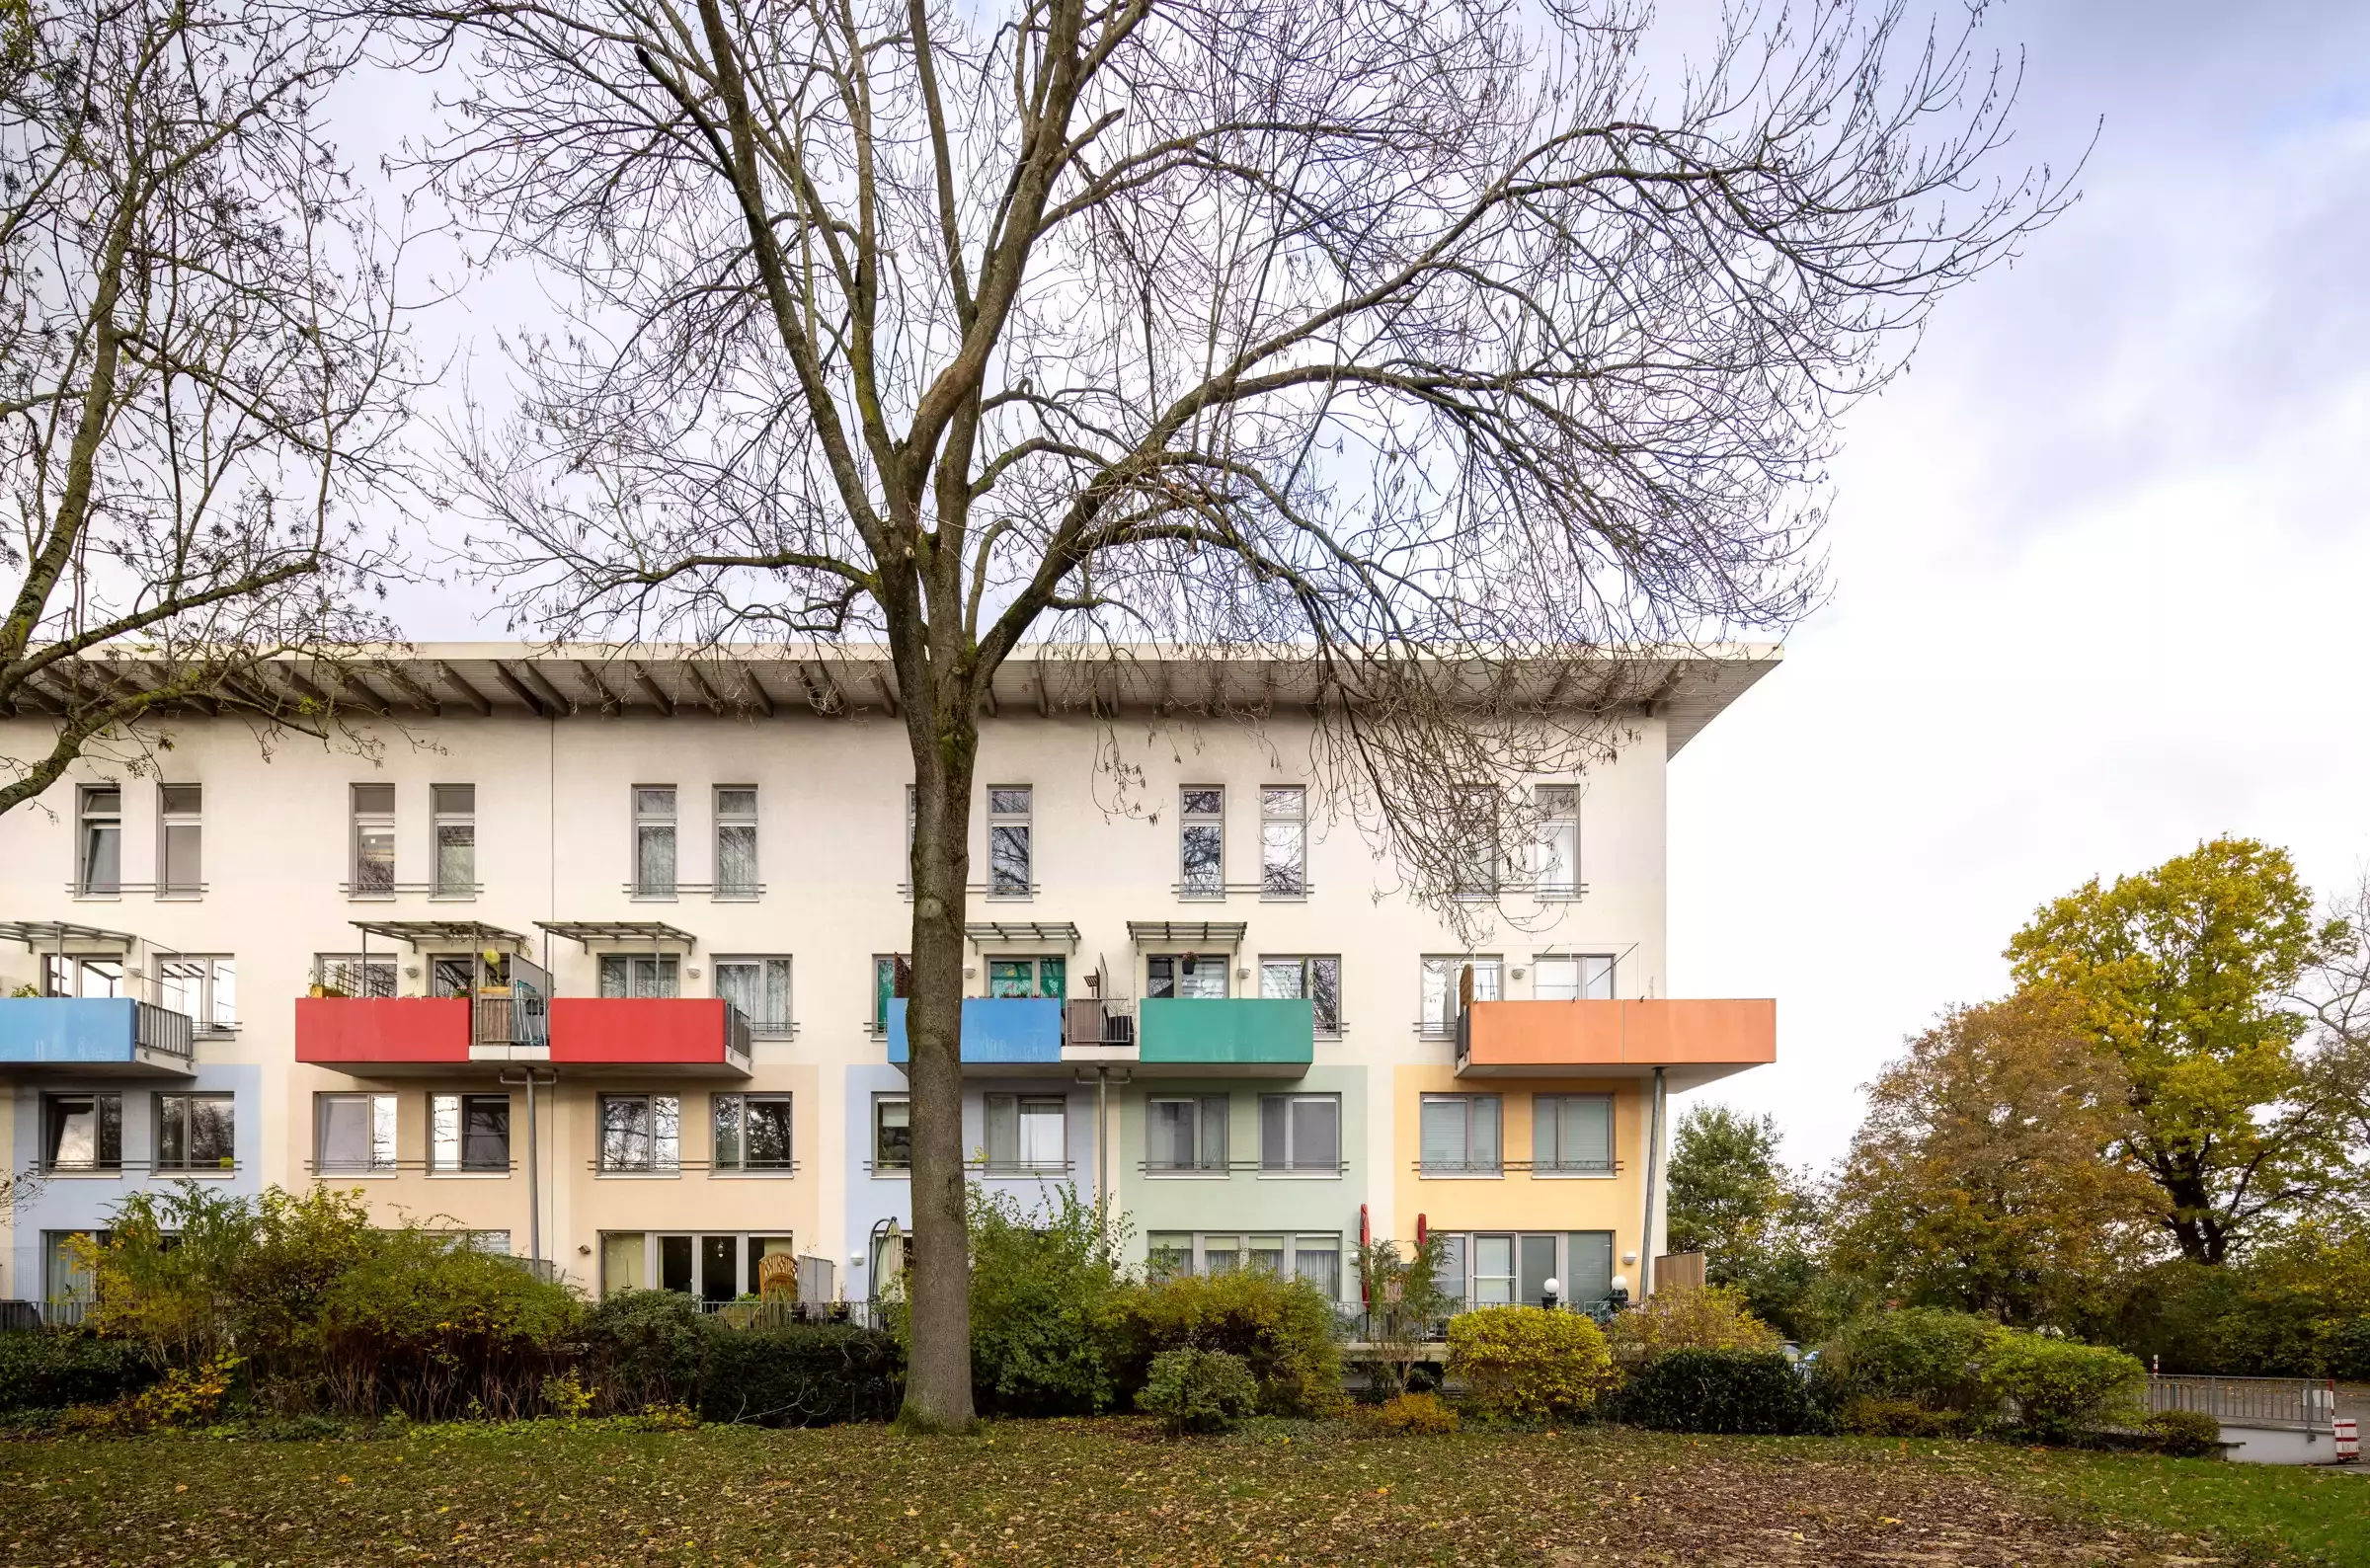 Blick auf ein weisses eckiges Mehrfamilienhaus mit bunten Balkonen